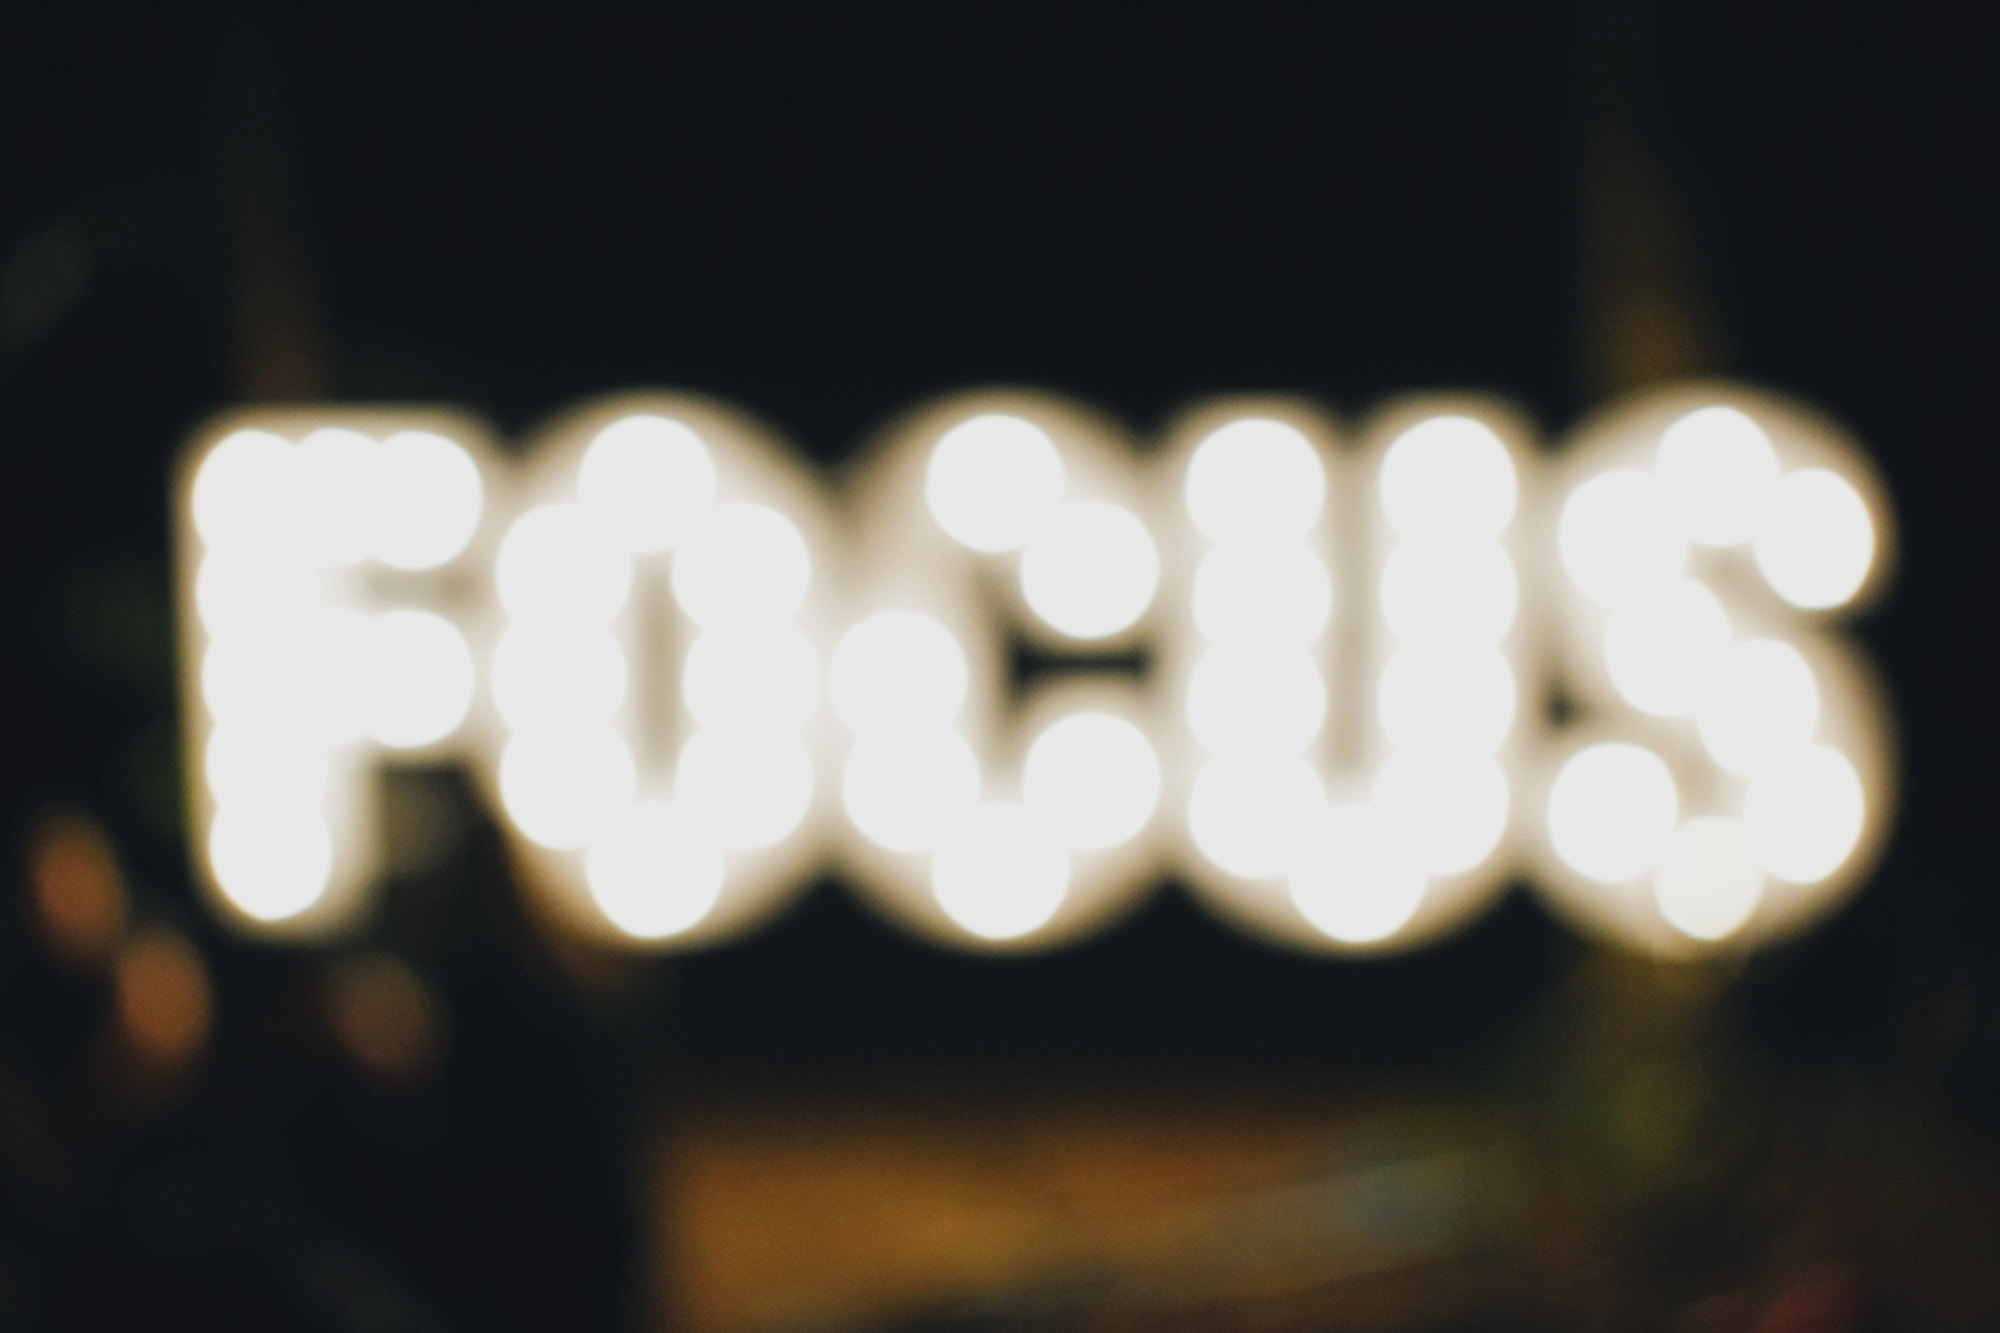 Focus is belangrijk bij het value beleggen.